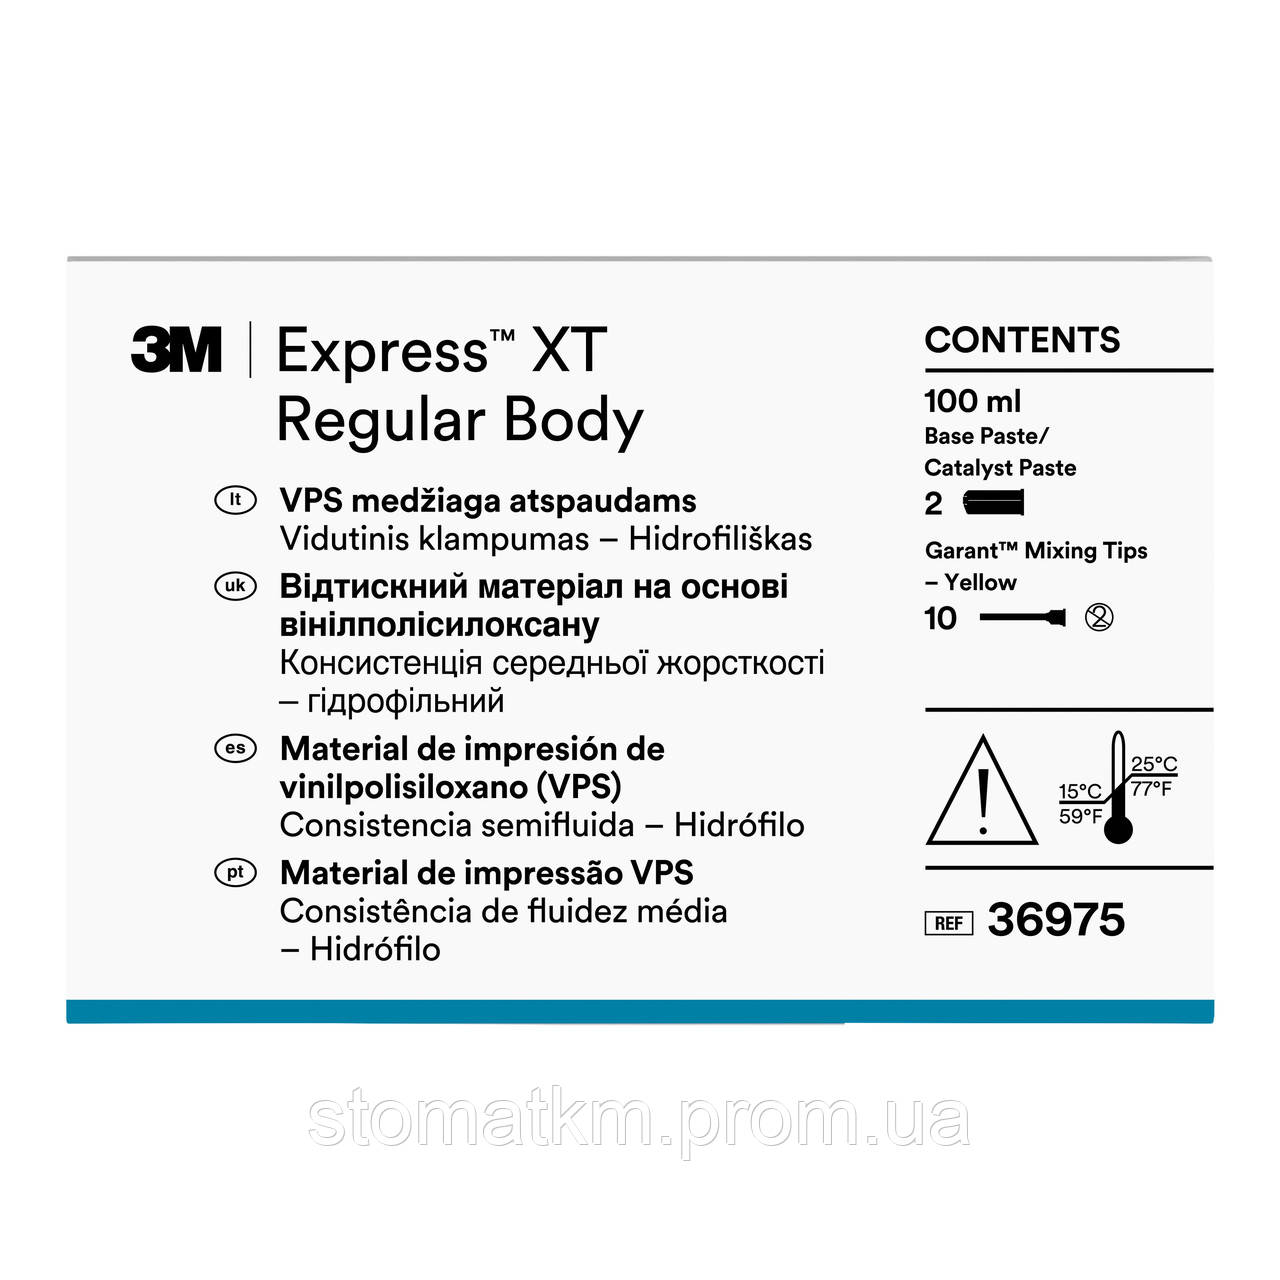 Експрес ХТ Регуляр Боді  36975 (Express™ XT Regular Body)